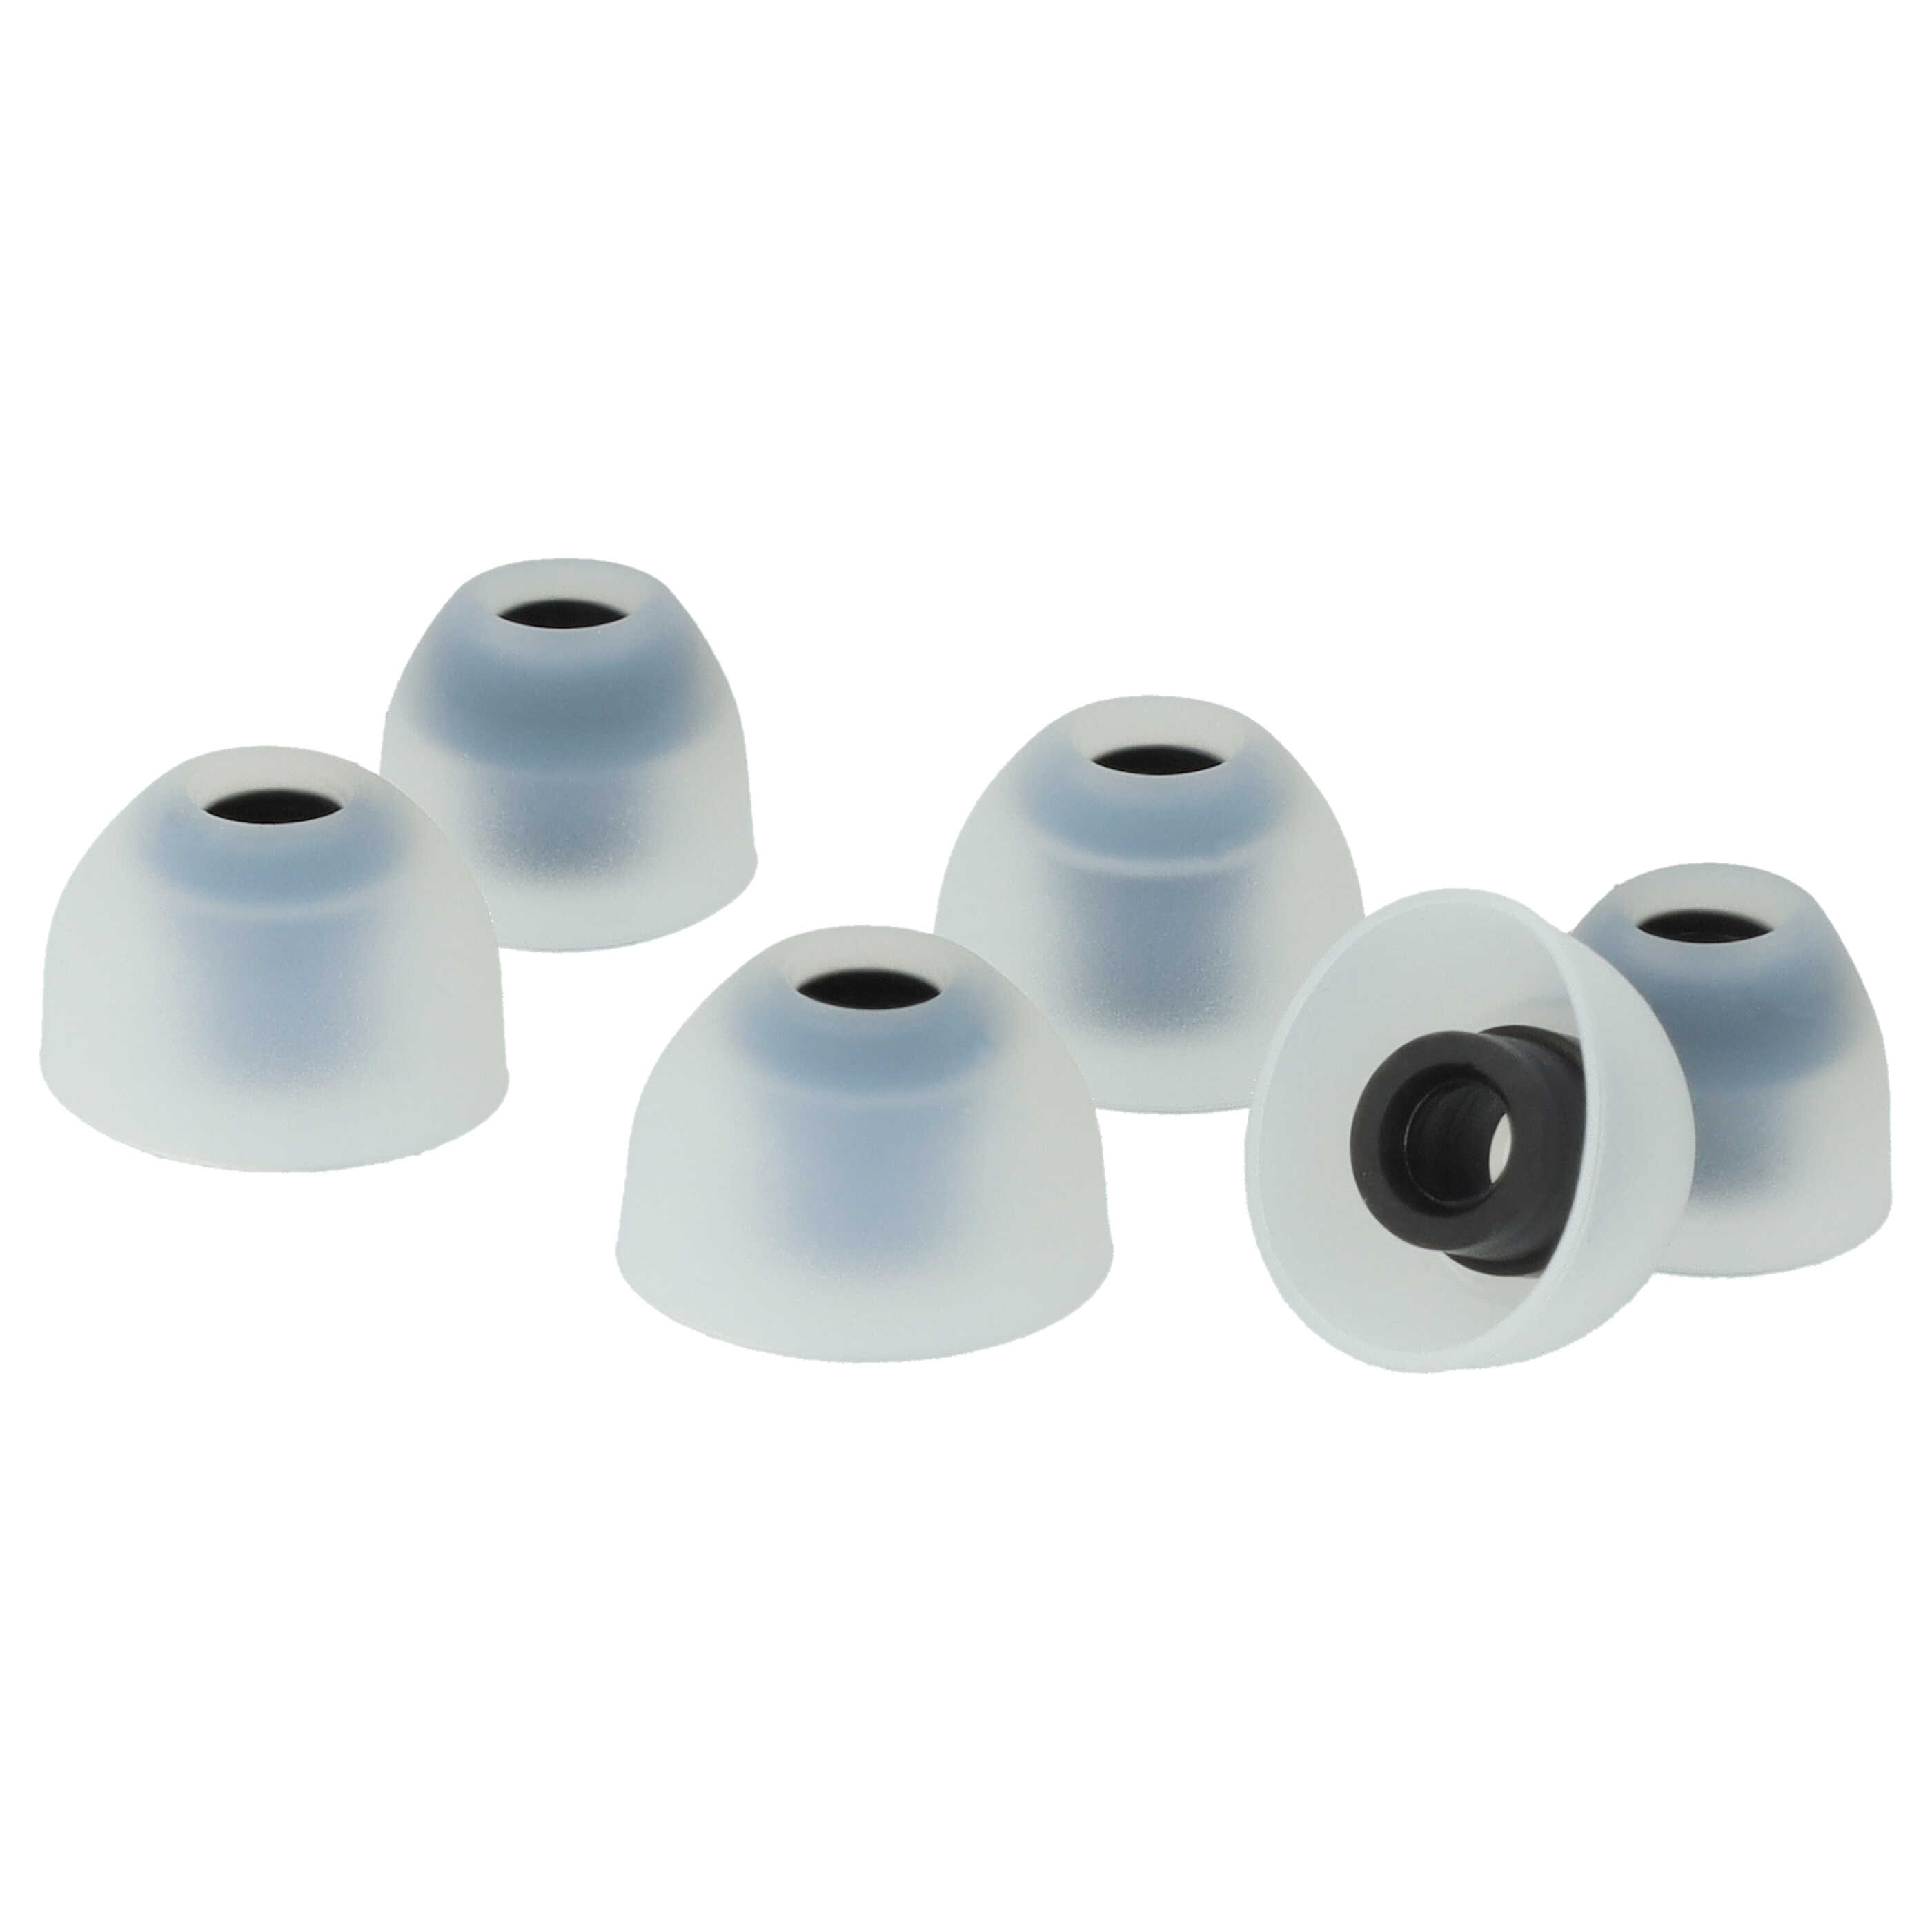 vhbw 7 Paar Ohrstöpsel passend für Sony WF-1000XM3 kabellose Kopfhörer - Schwarz / Weiß, Silikon, Weich